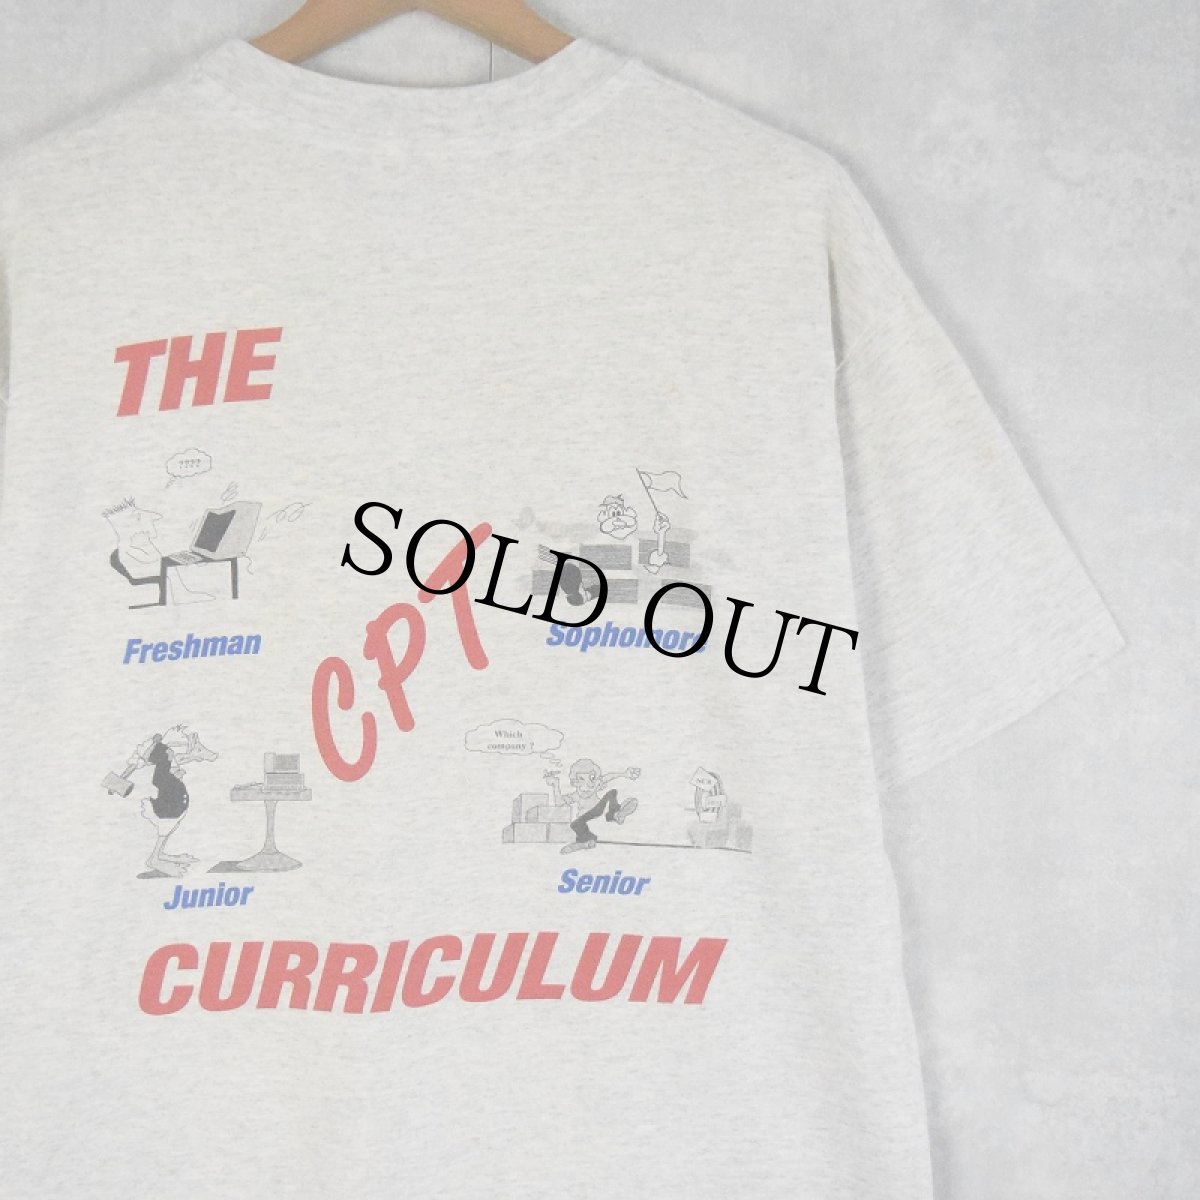 画像1: 90's USA製 "THE CPT Dad CURRICULUM" イラストプリントTシャツ L (1)